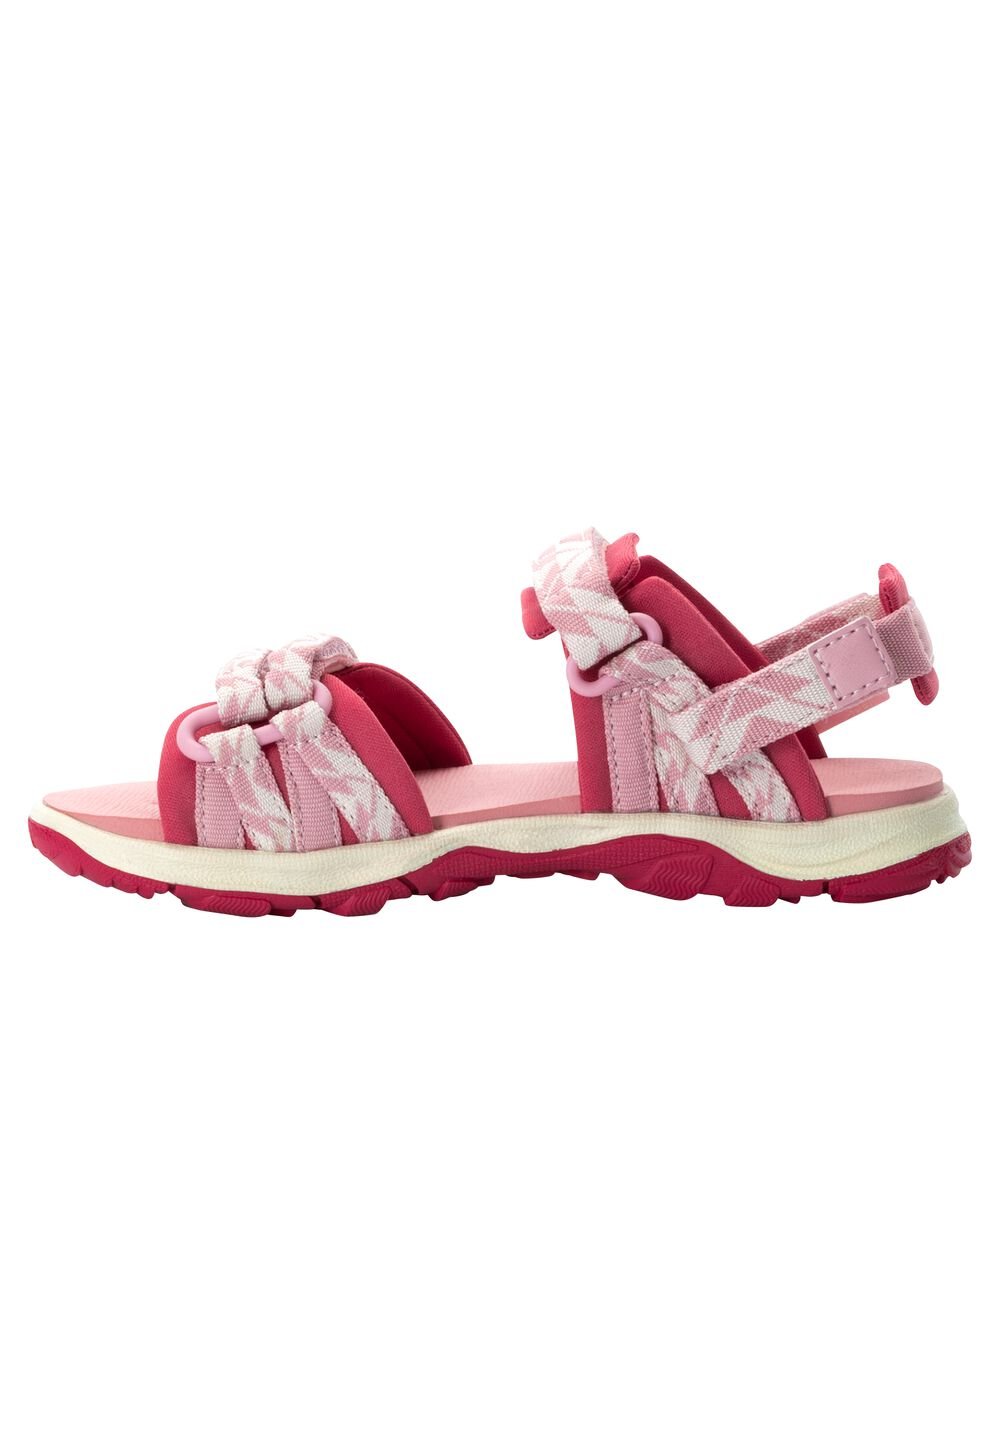 Jack Wolfskin 2 IN 1 Sandal Kids Kinderen sandalen 30 soft pink soft pink